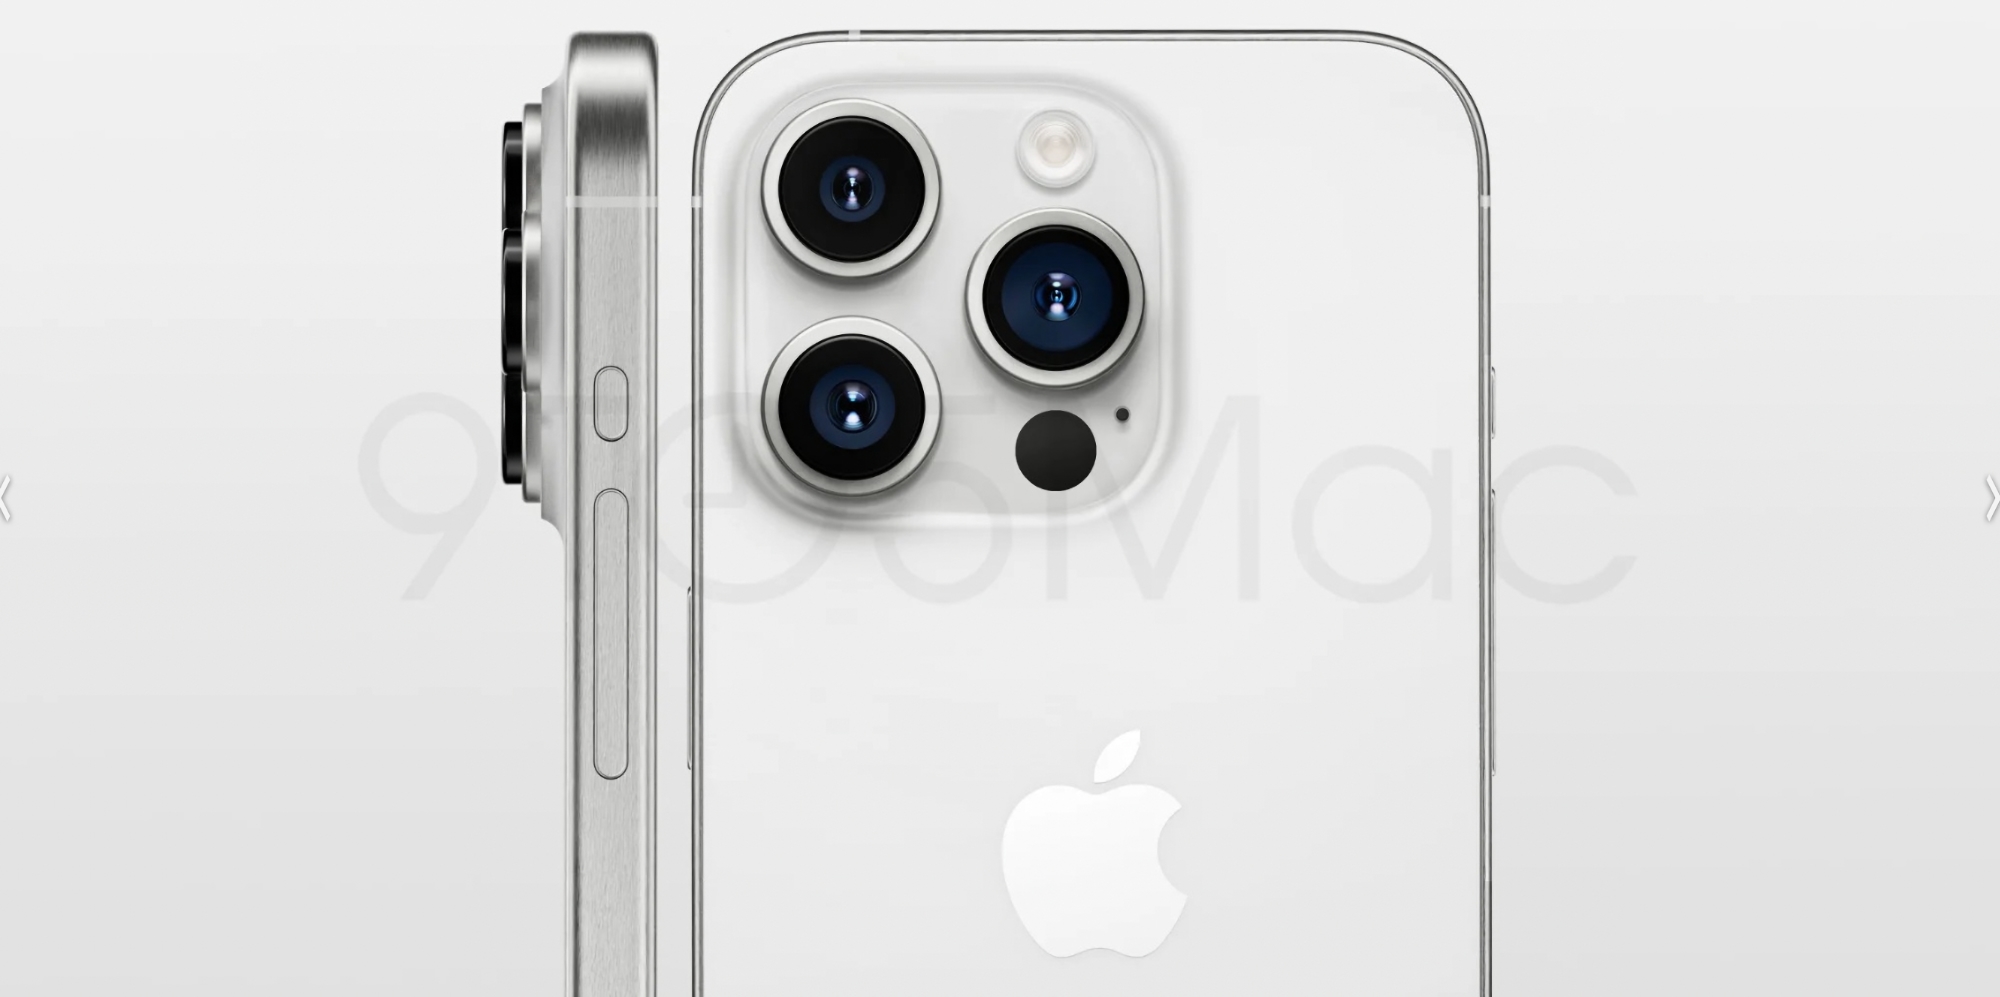 Plotka: Apple nie zdecydowało się na wyposażenie iPhone'a 15 Pro i iPhone'a 15 Pro Max w nakładki dotykowe Taptic Engine zamiast fizycznych przycisków